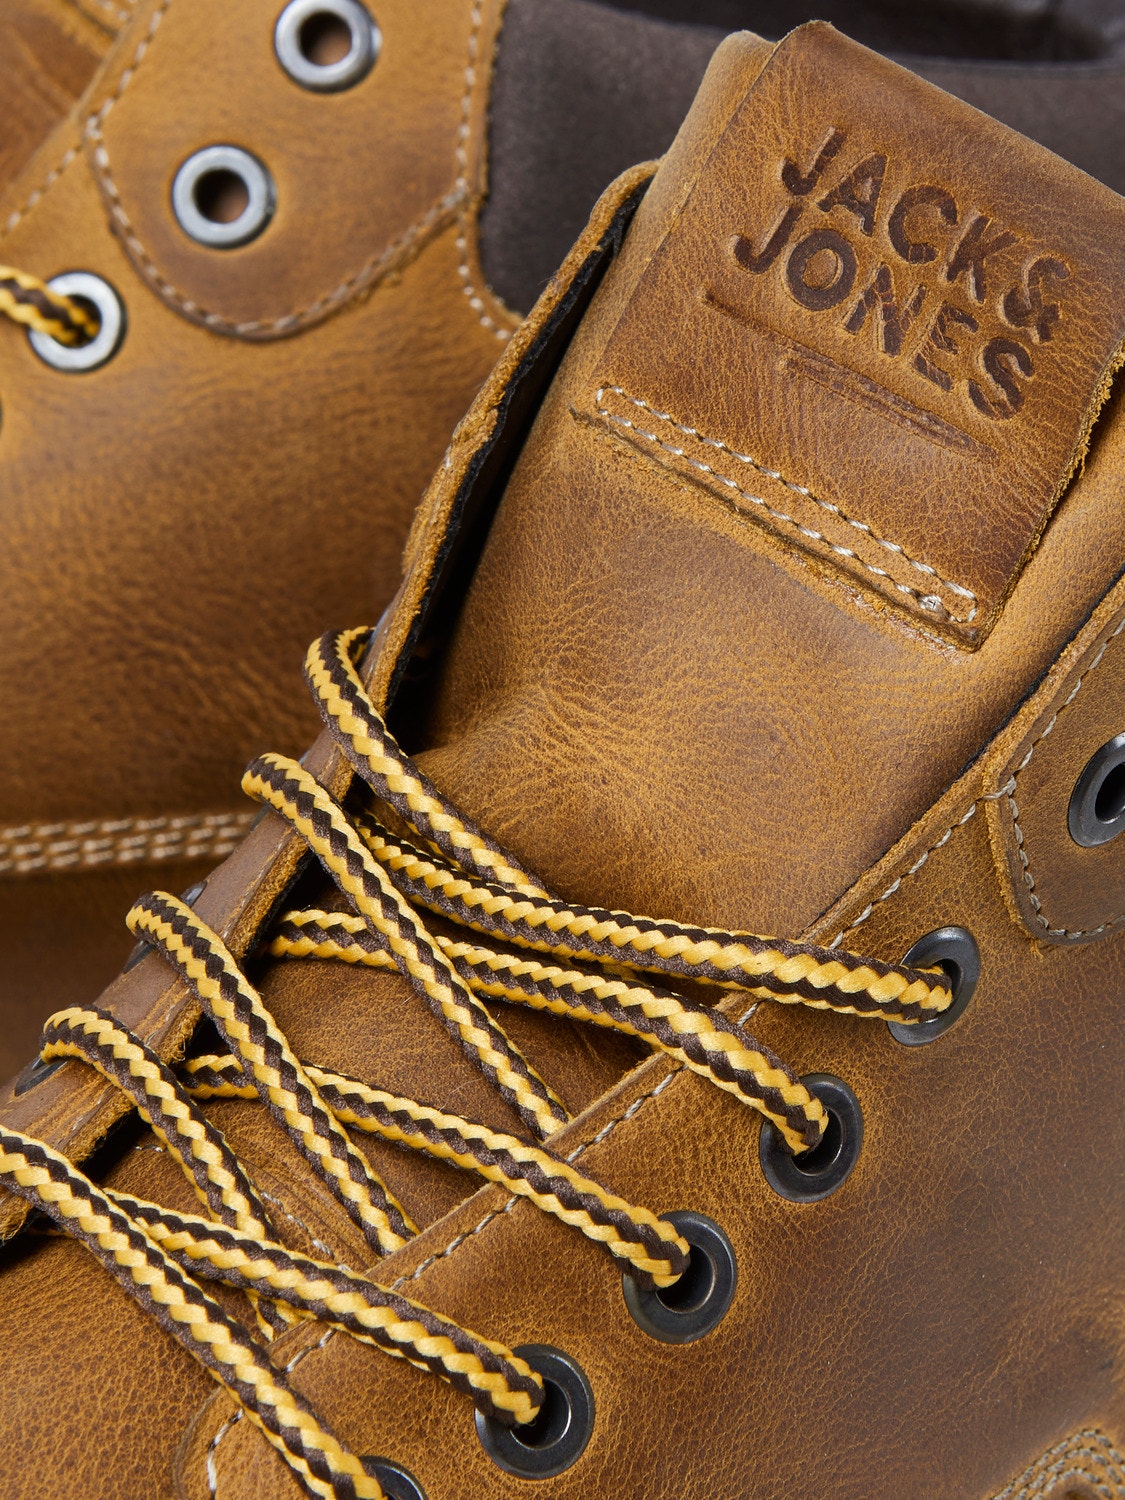 Jack & Jones Leather Boots -Honey - 12159516